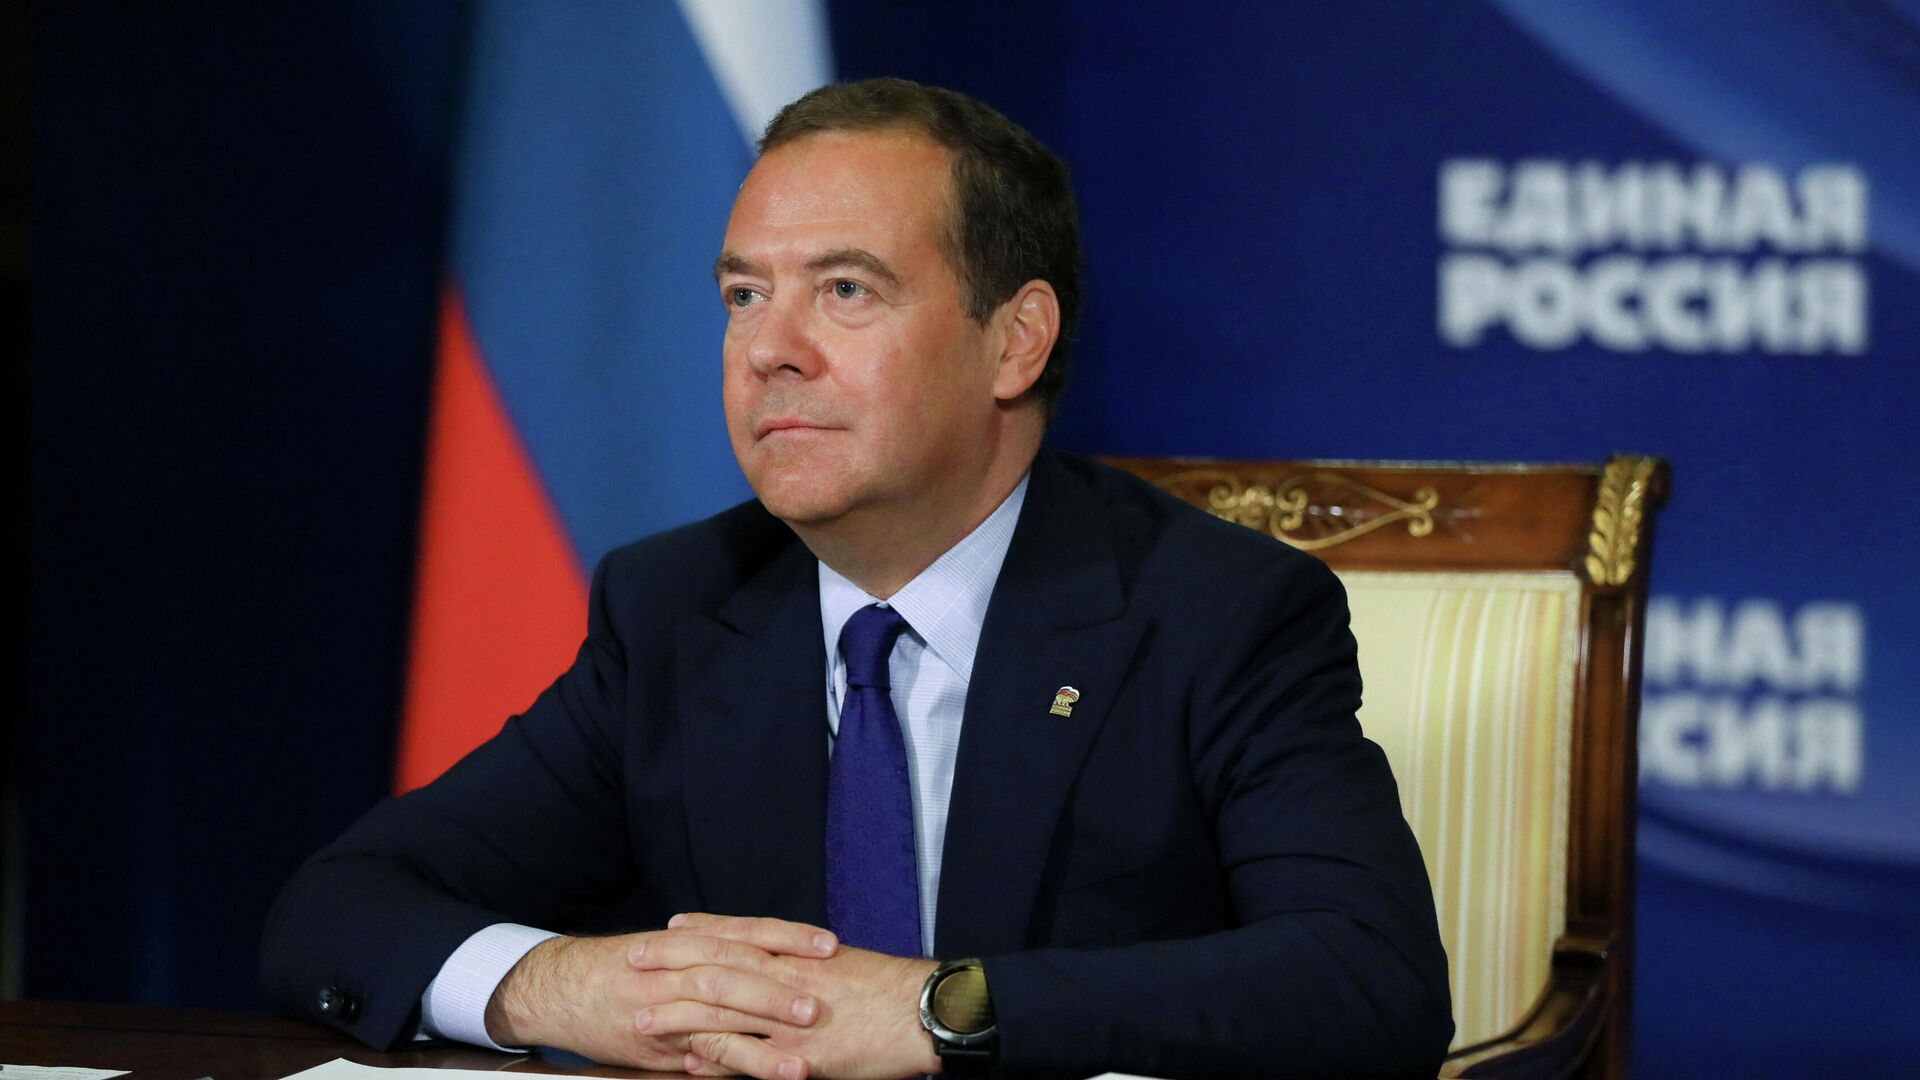 ЕР планирует поделиться постами в комитетах Госдумы, заявил Медведев